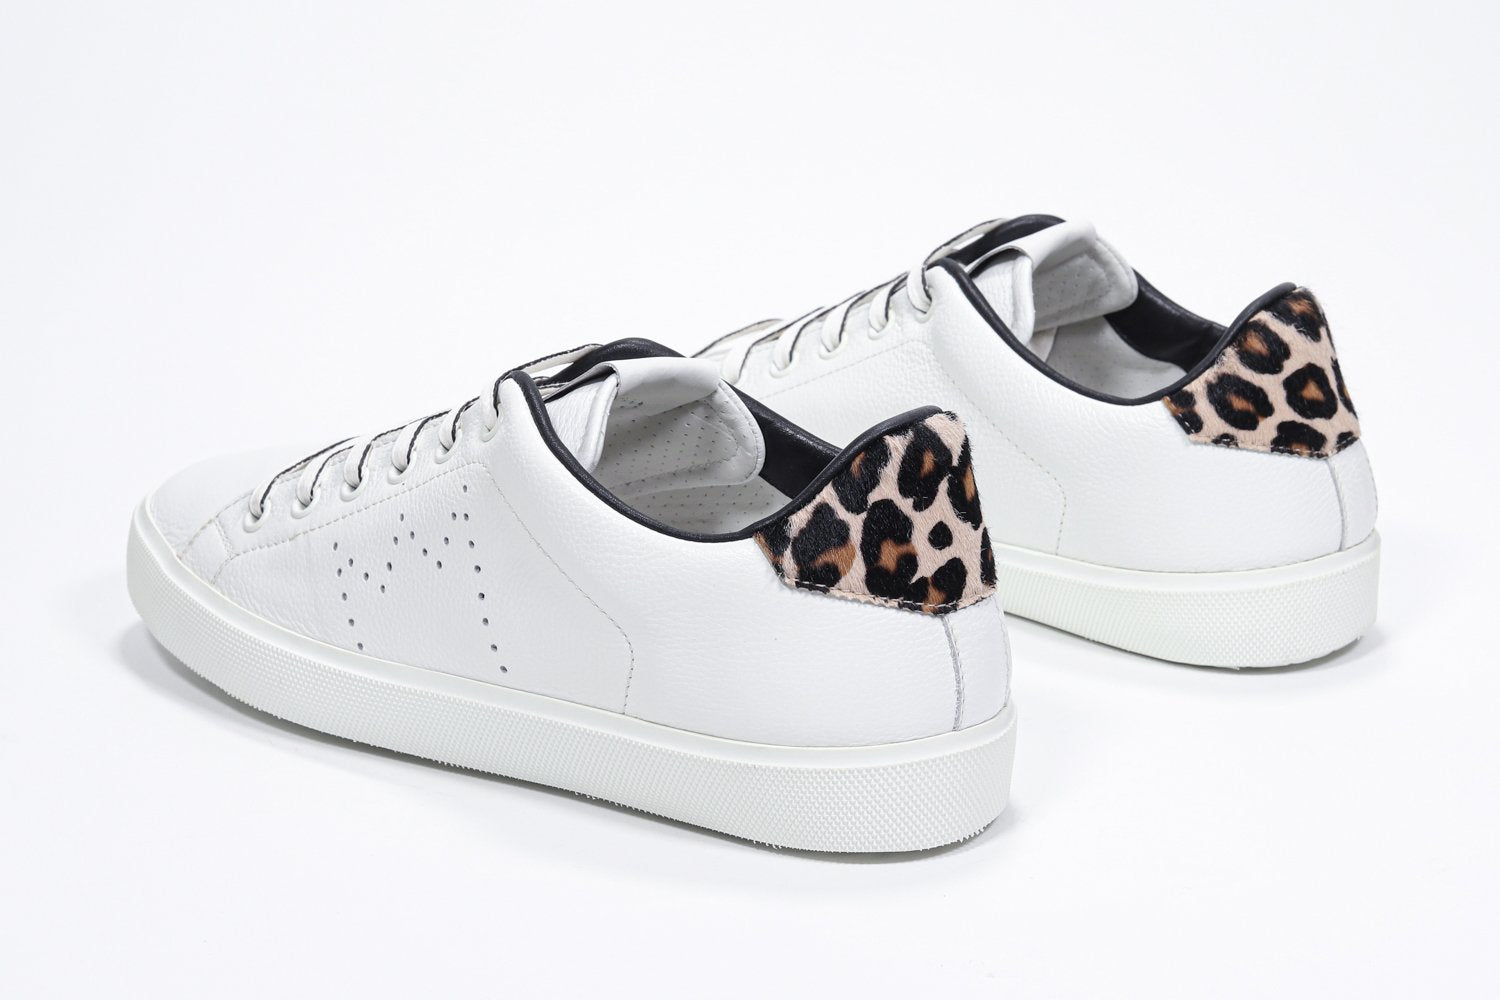 Vista posteriore a tre quarti di BASSE  sneaker  bianco con dettagli leopardati e logo della corona traforato sulla tomaia. Tomaia in pelle e suola in gomma bianca.